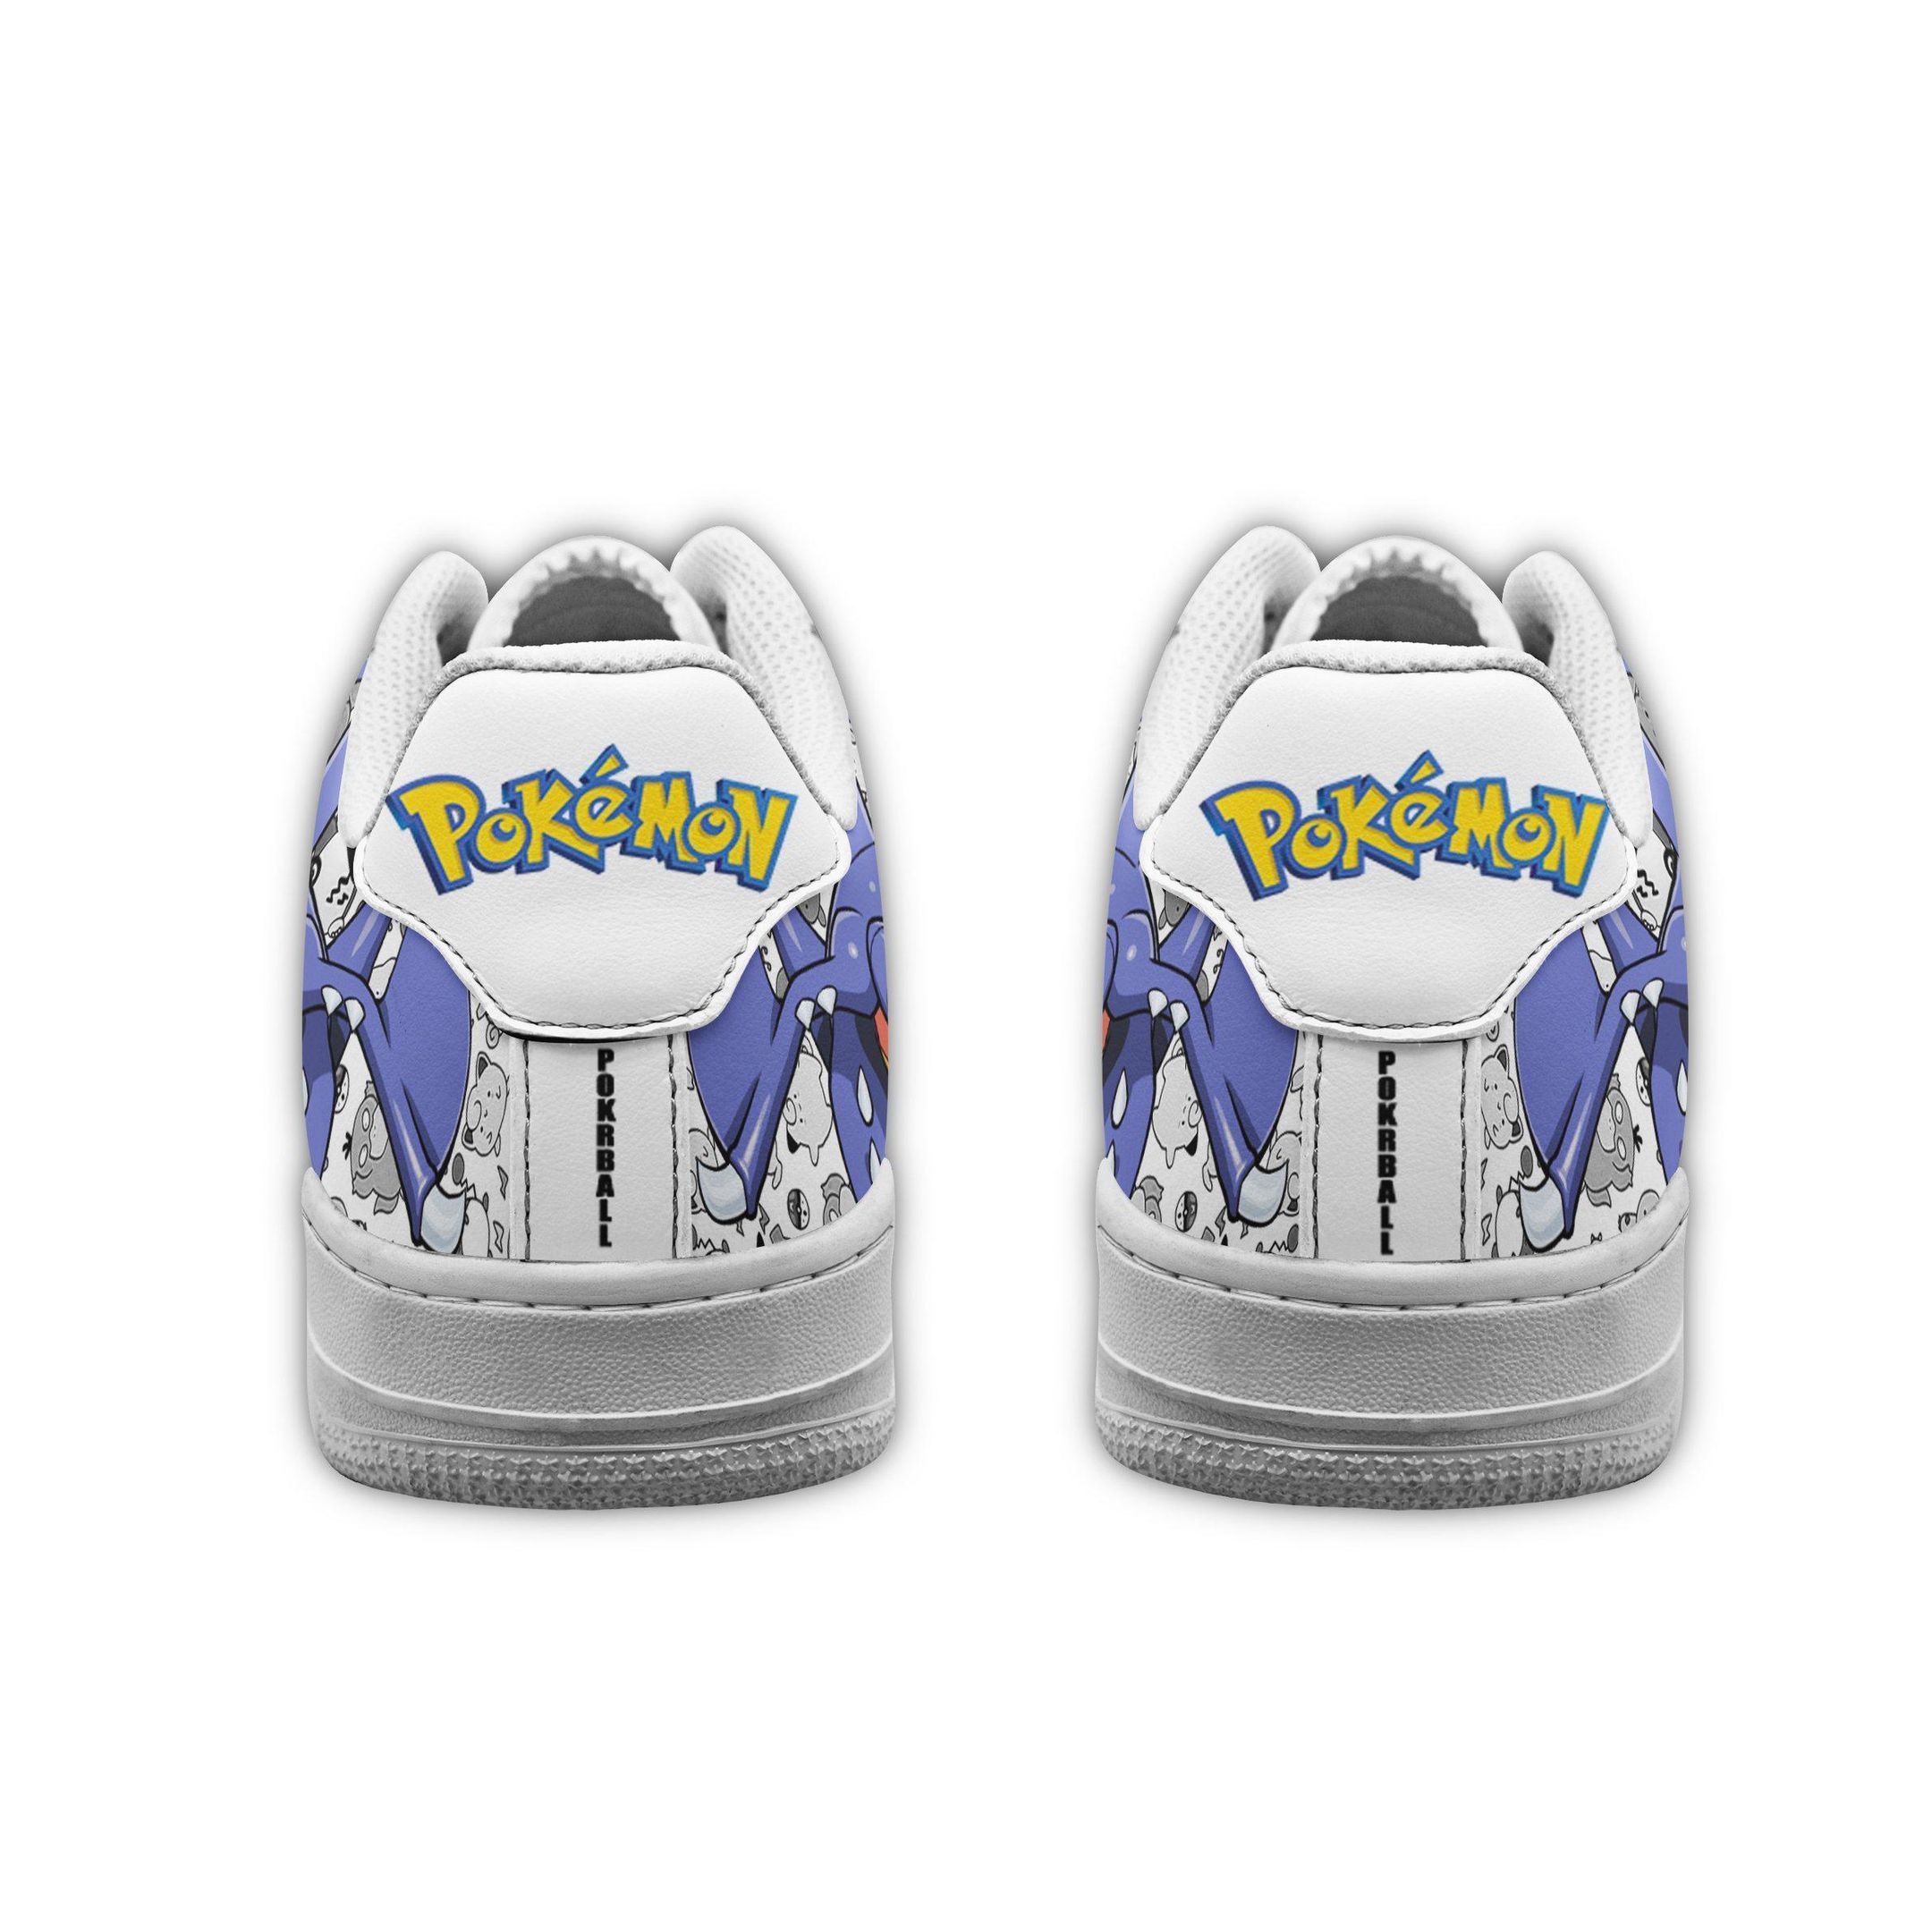 Garchomp Air Shoes Pokemon Shoes Fan Gift Idea GO1012